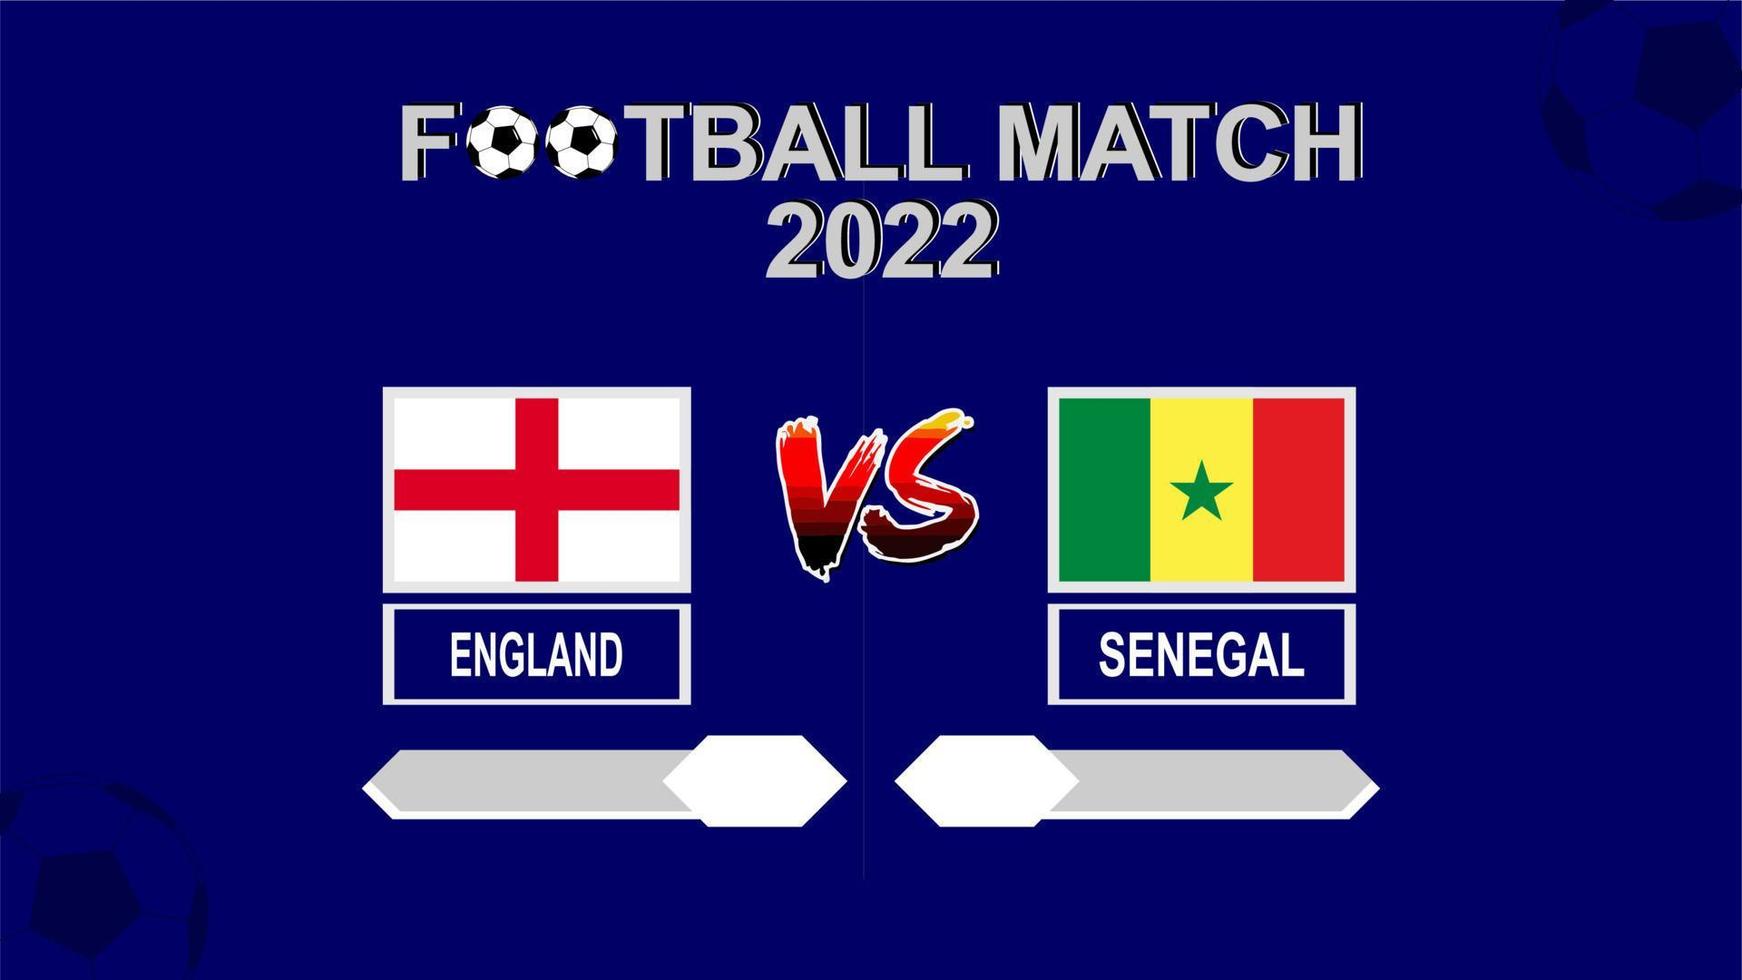 angleterre vs sénégal coupe de football 2022 vecteur de fond de modèle bleu pour le calendrier ou le match de résultat